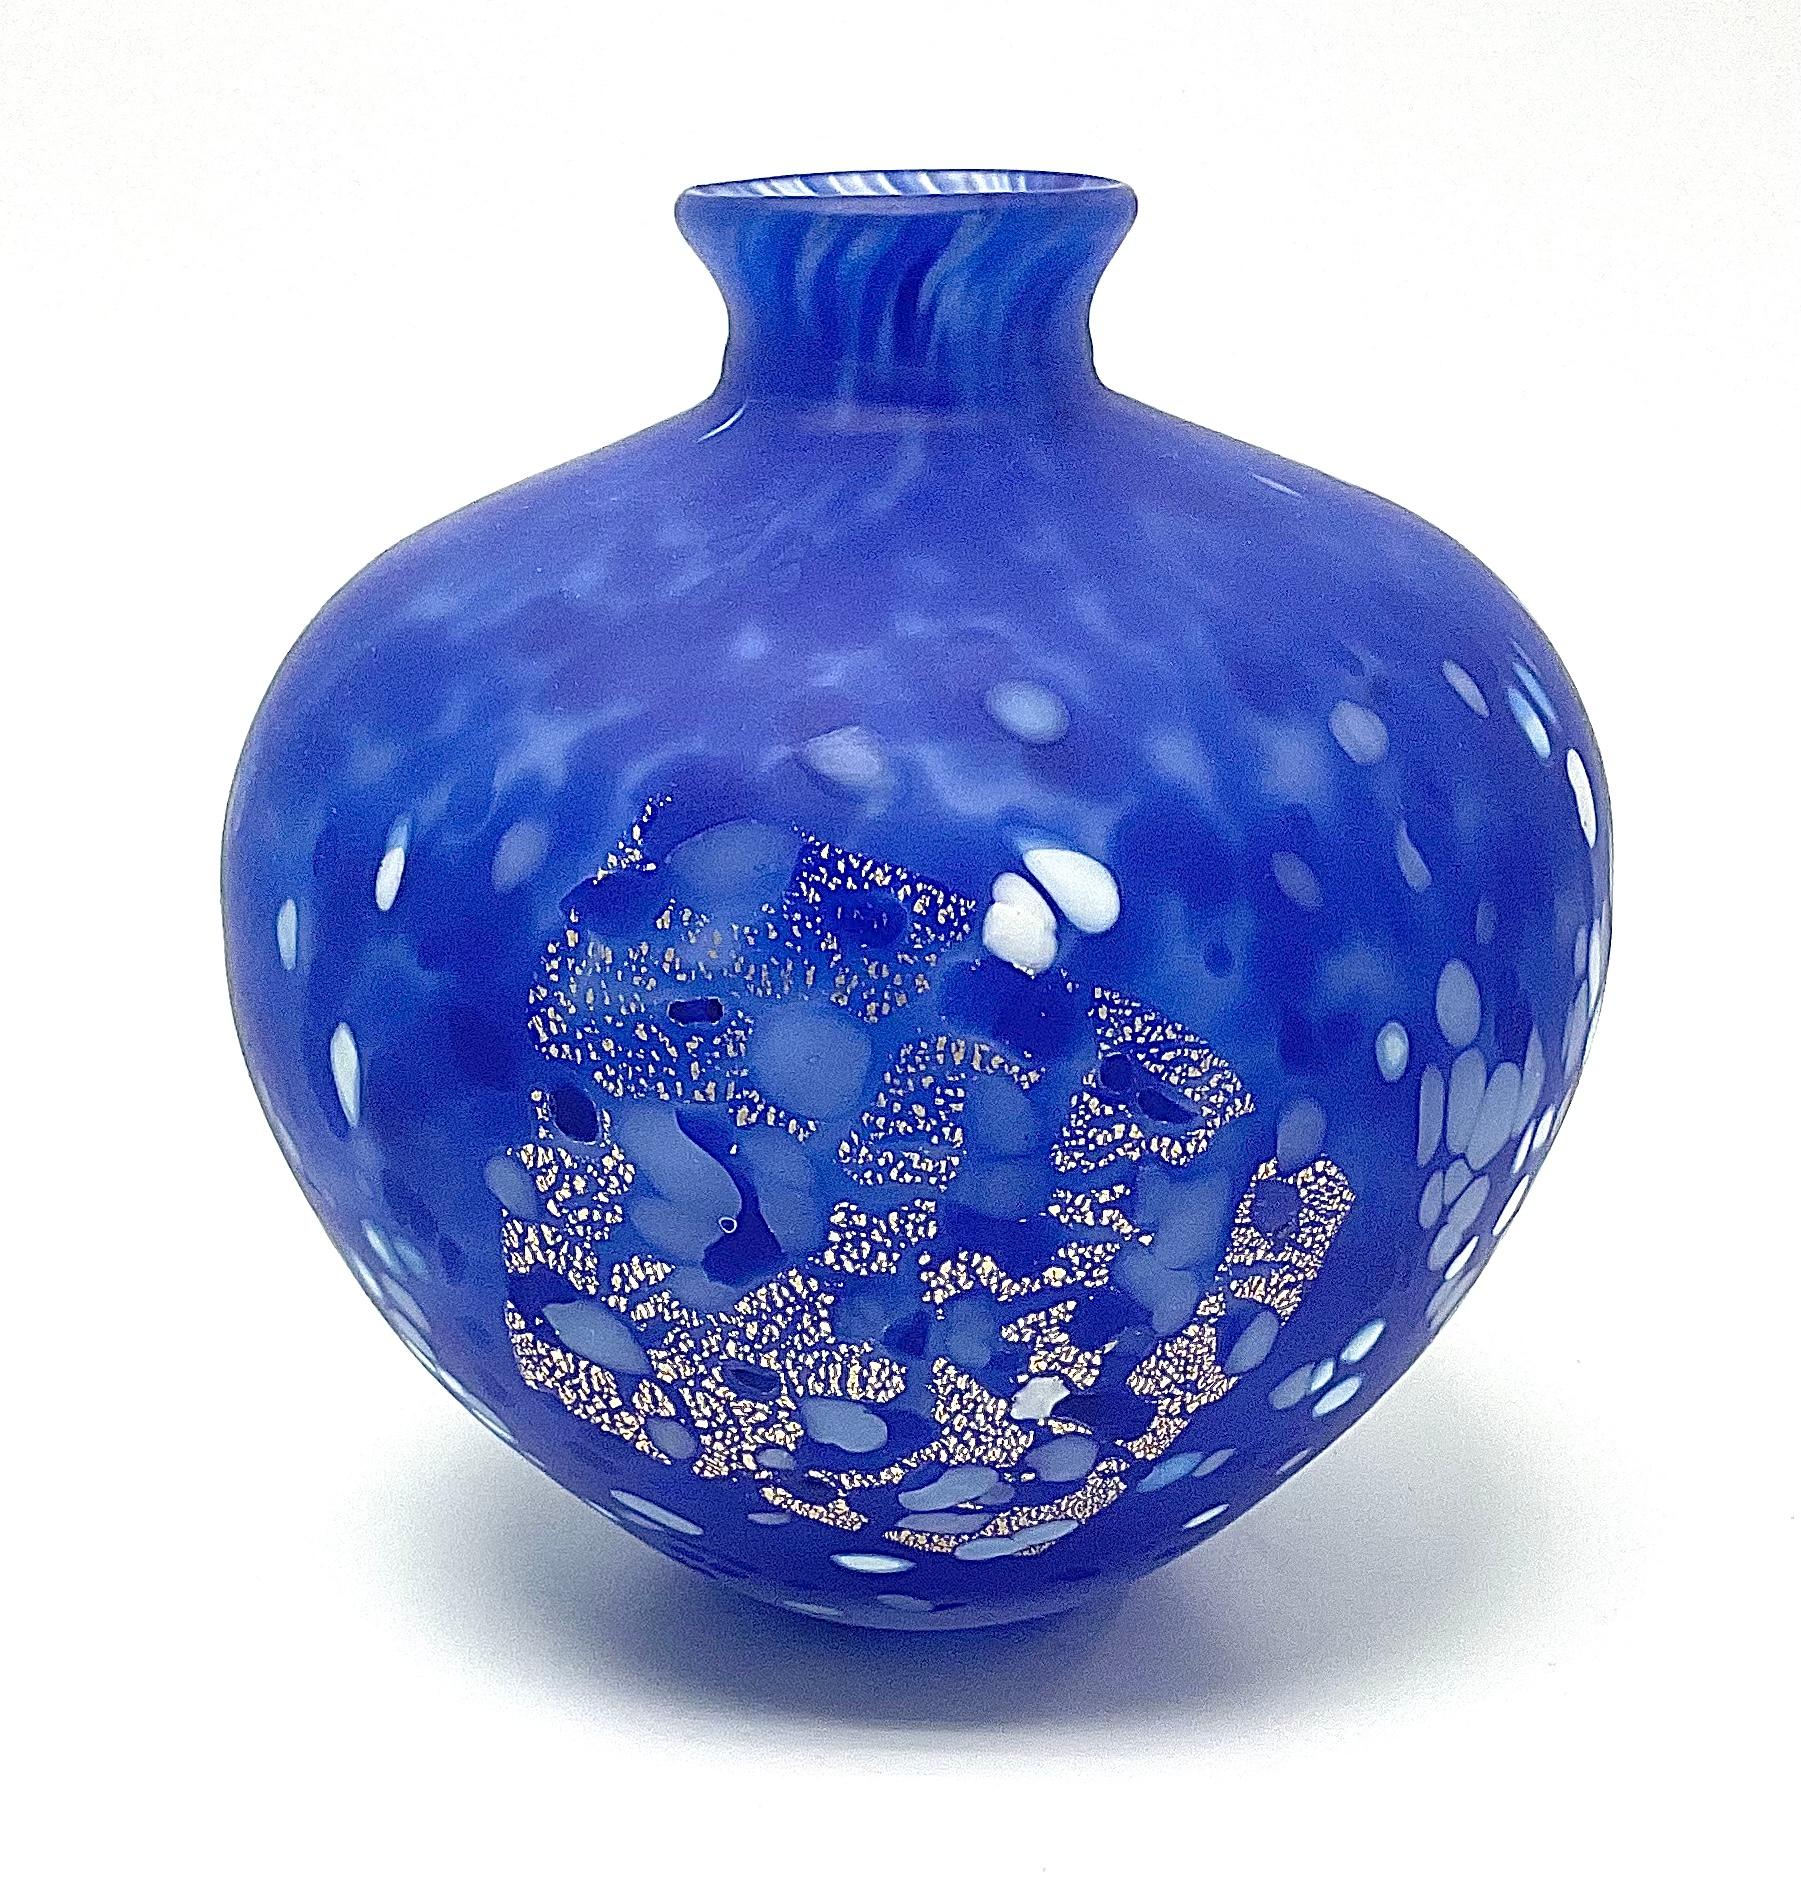 Vase en verre d'art signé par l'artiste japonais Kyohei Fujita. Artiste très recherché avec très peu d'objets disponibles sur le marché. 

Kyohei Fujita ( ?? ? ?, Fujita Kyohei, 1921 - 18 septembre 2004) était un artiste verrier japonais. Il a